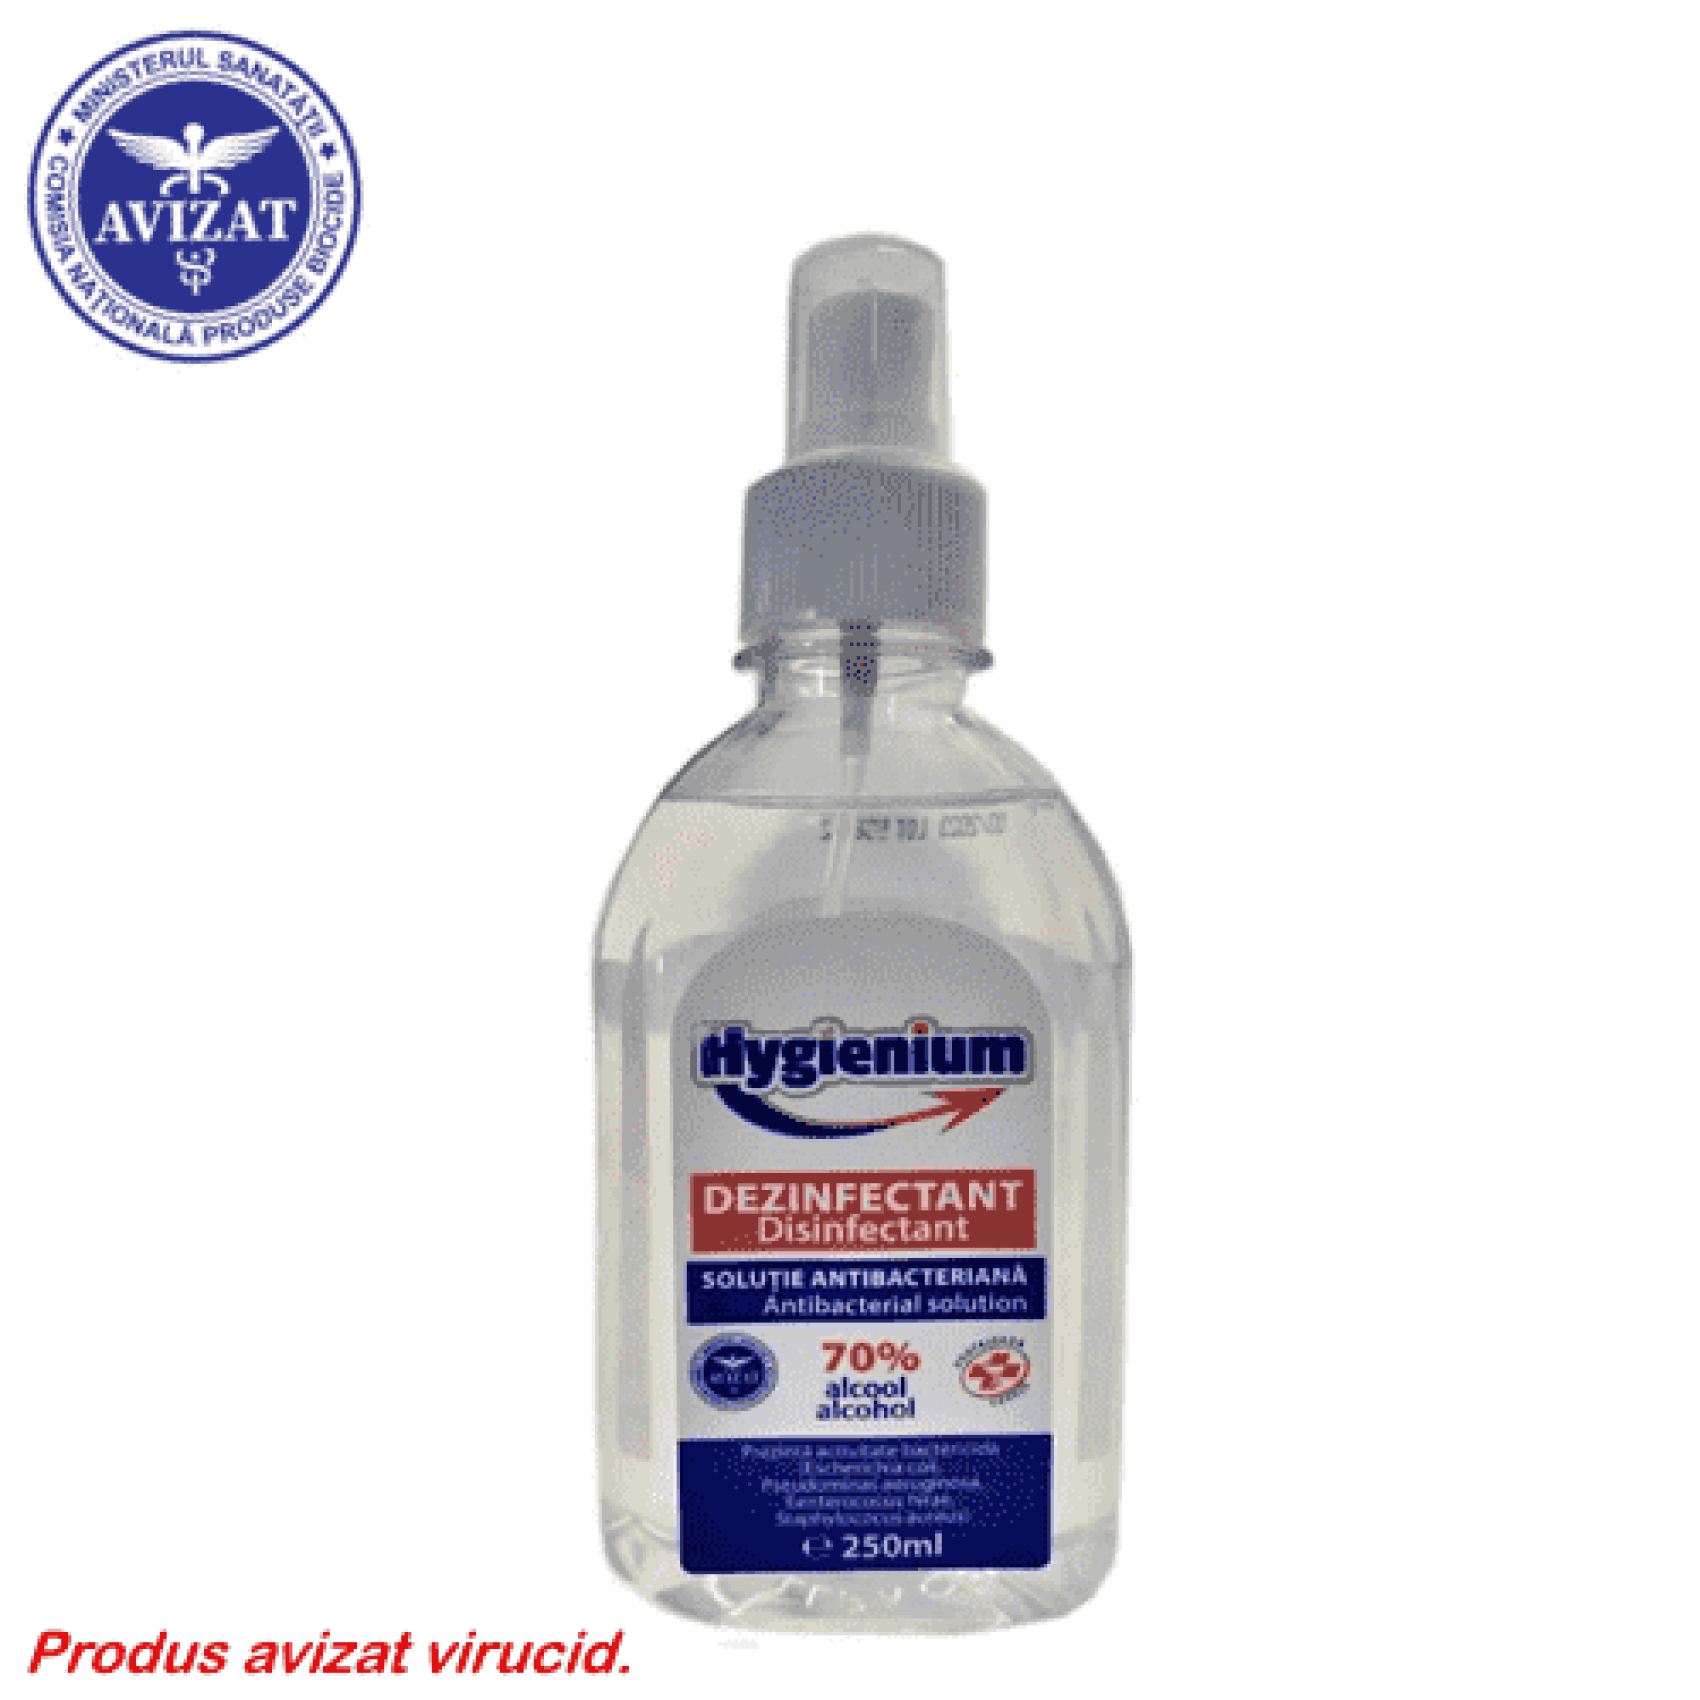 Hygienium dezinfectant virucid solutie pentru maini - 250 ml